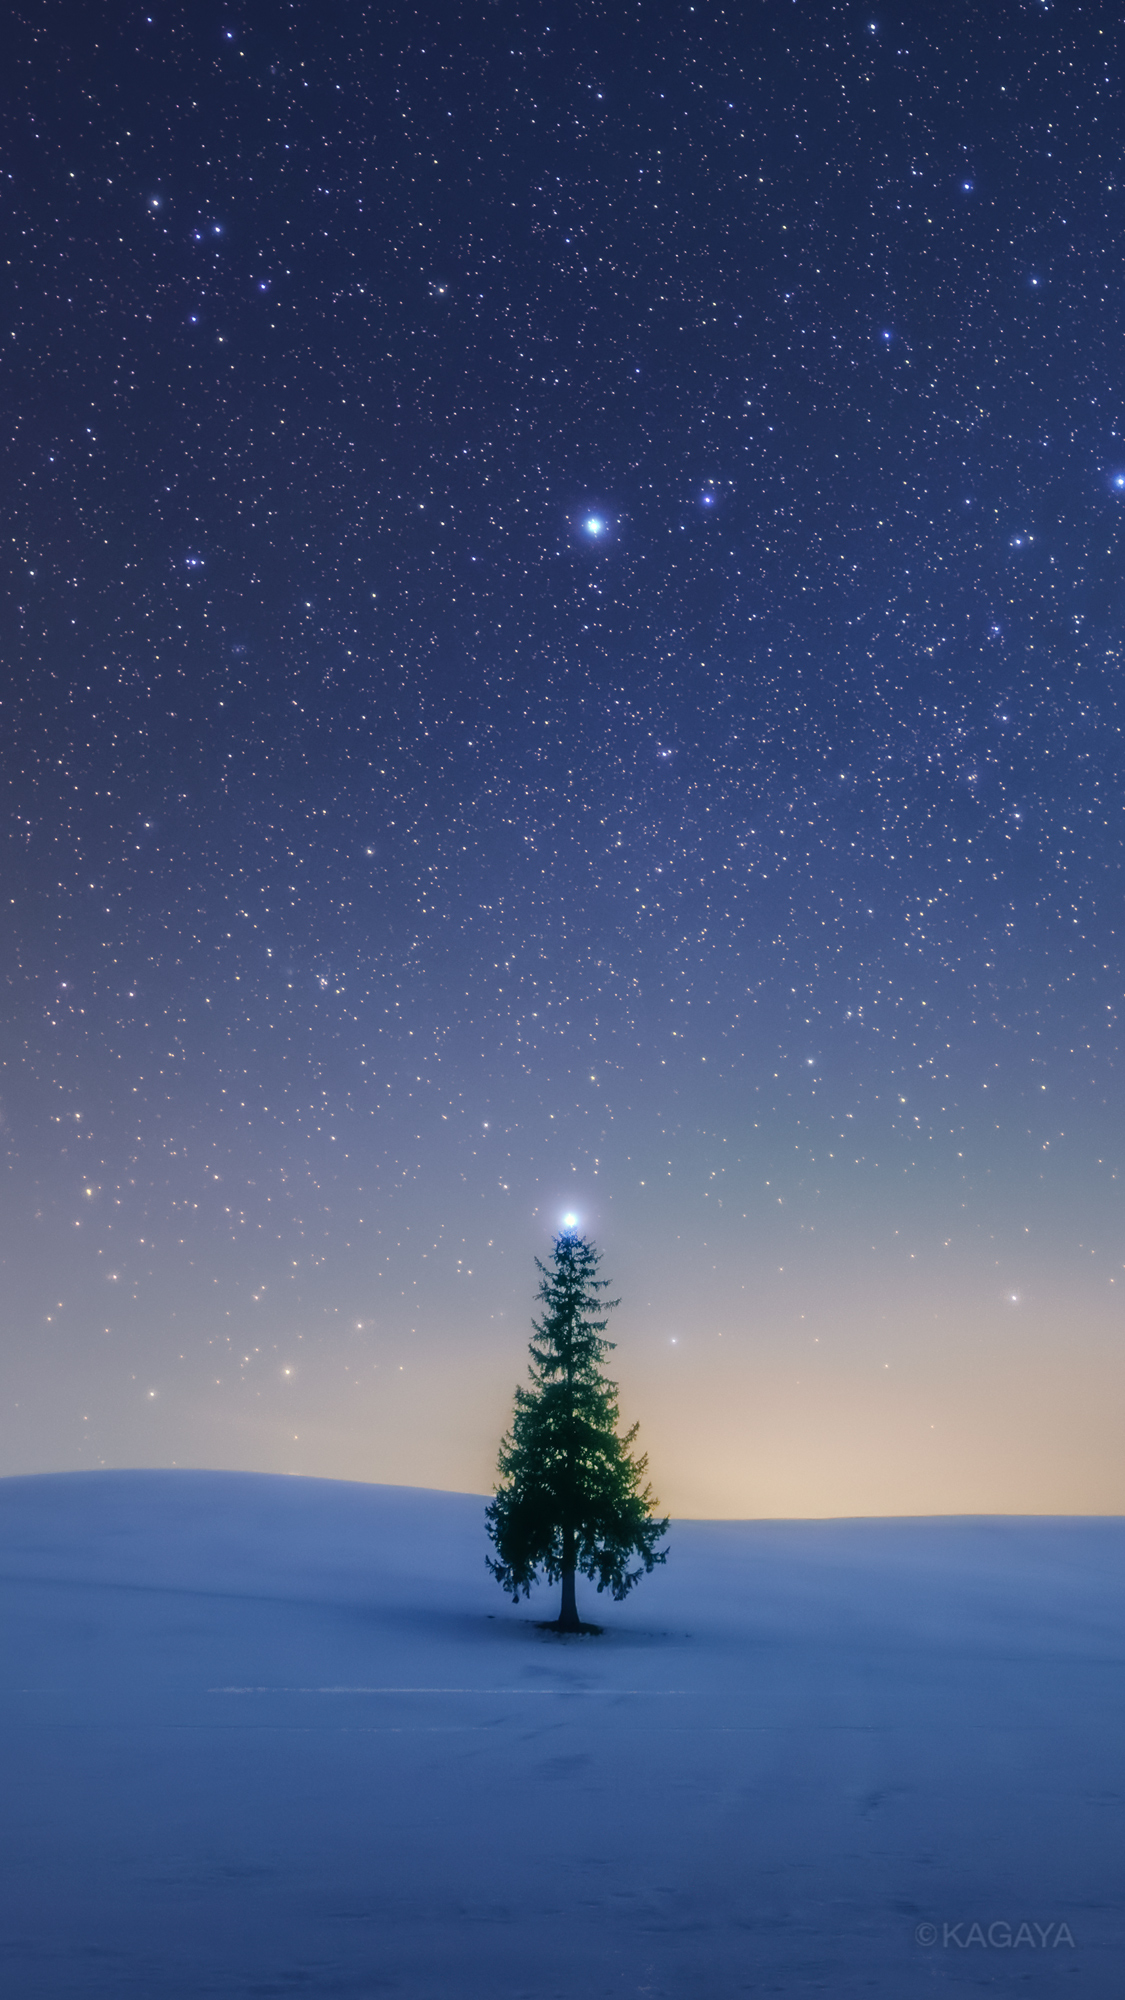 Kagaya 自然のクリスマスツリー ツリーの頂の星はシリウスです クリスマスの壁紙にお使いください 以前 北海道にて撮影 スマートフォン用です 加工したり他の人に配布したりはしないでくださいね リツイートはうれしいです 今日もお疲れさまで